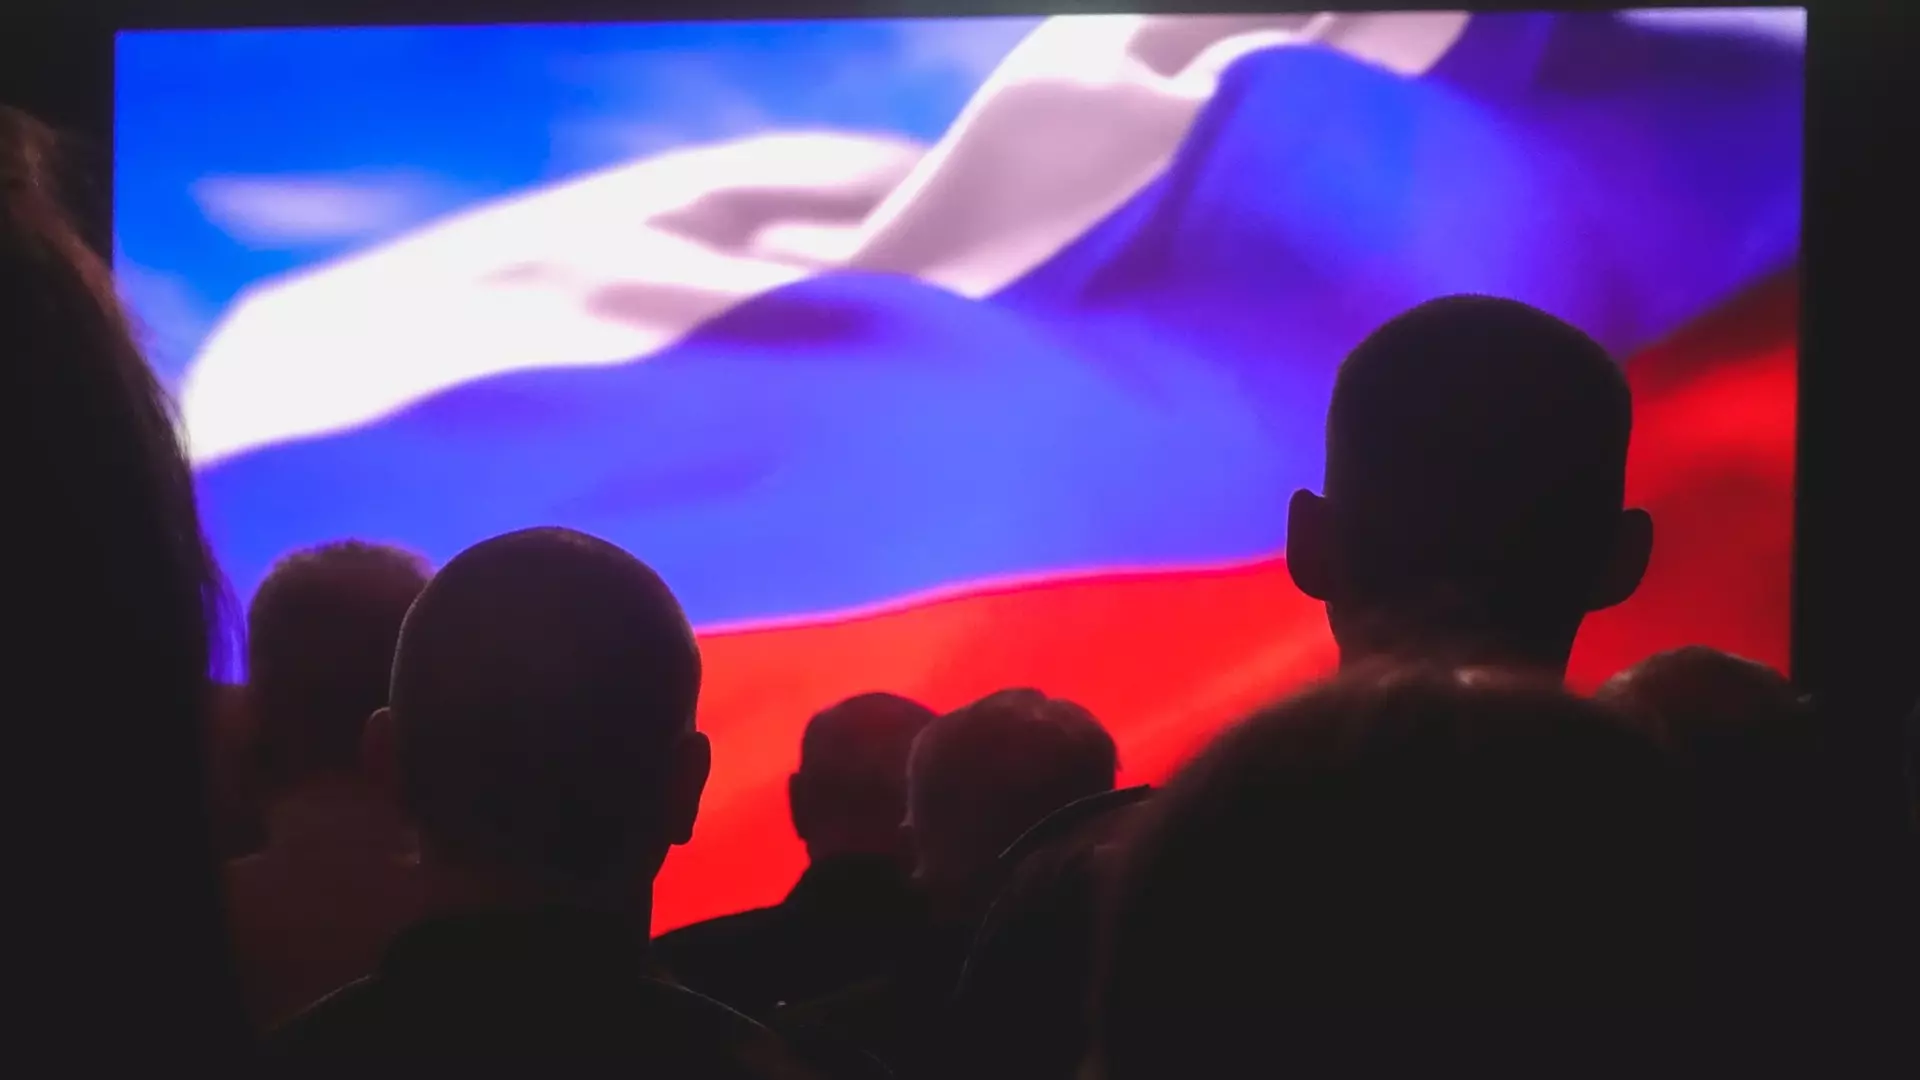 О чувстве гордости на выставке «Россия» рассказали 97% посетителей